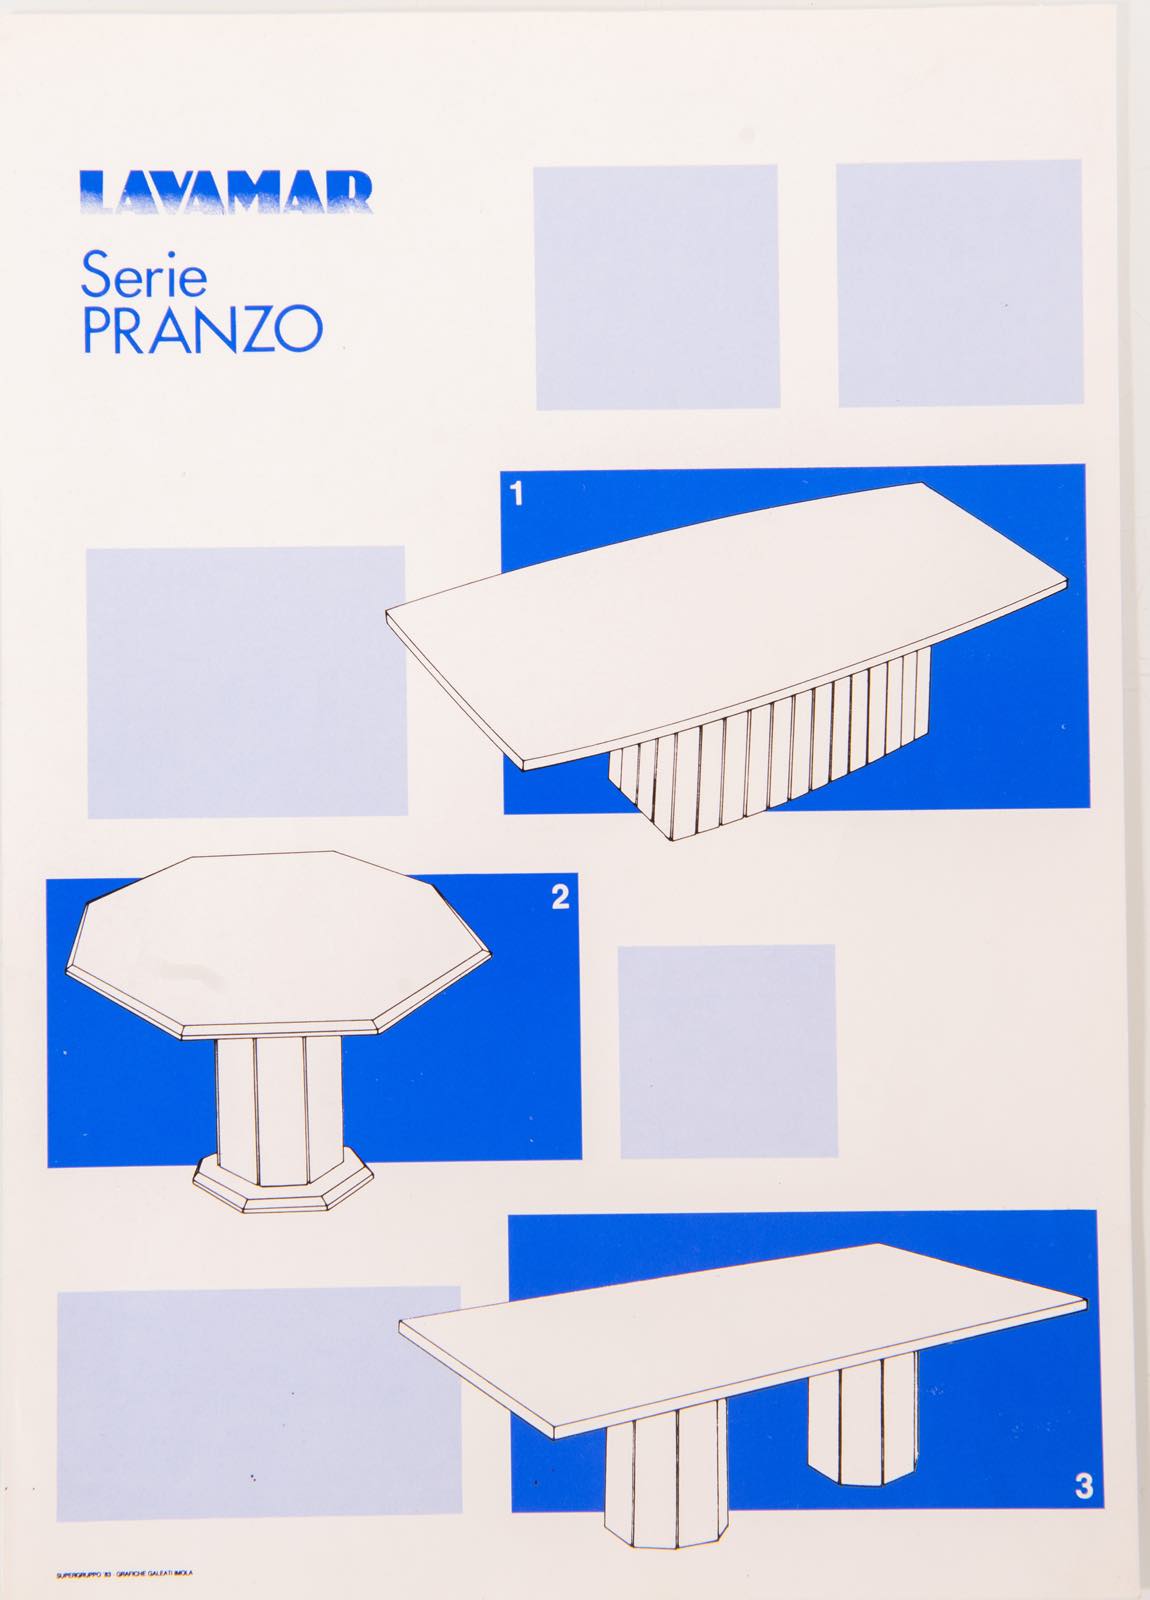 Lavamar - Serie Pranzo, Tavolo da pranzo in alabastro mediterraneo cristallino, Anni ‘80. - Image 3 of 3